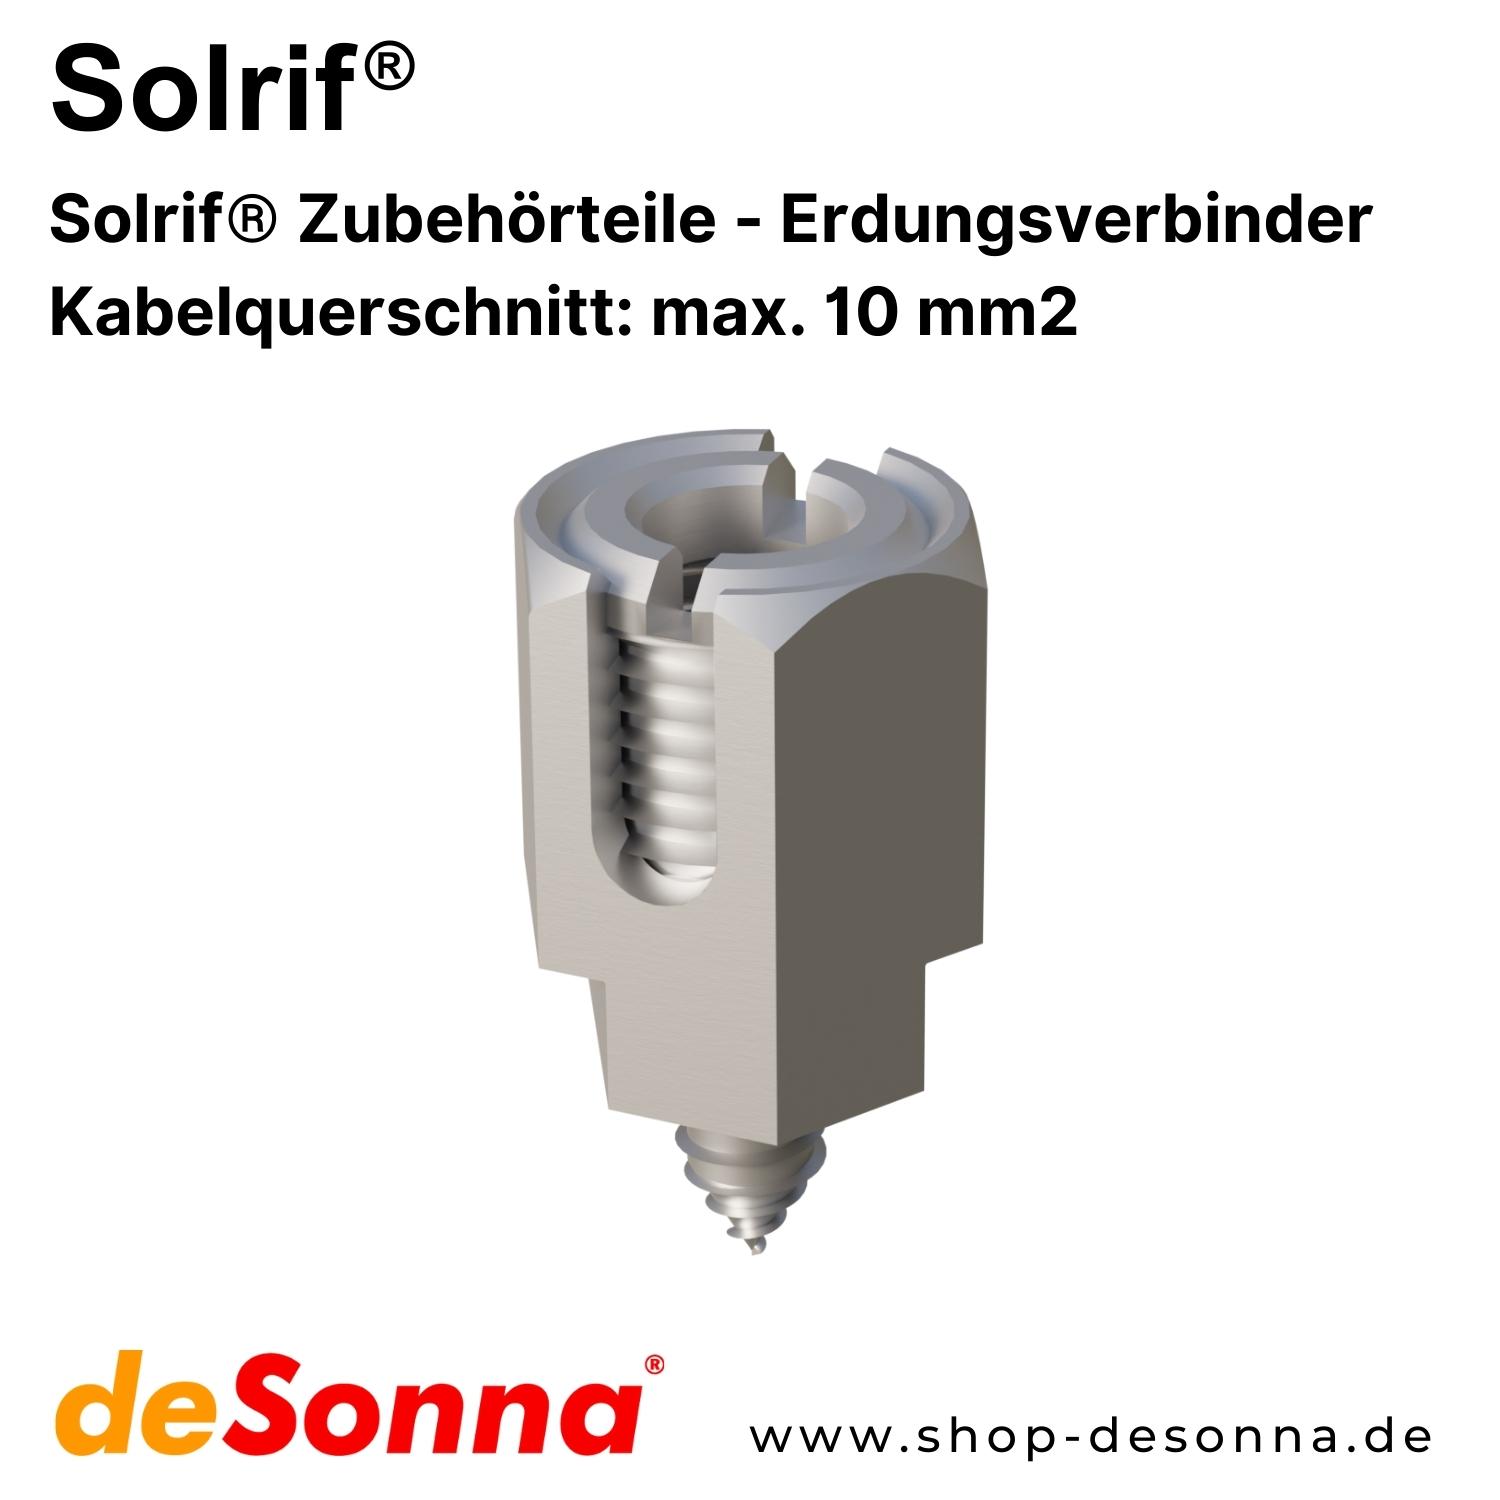 Solrif® Erdungsverbinder - Kabelquerschnitt: max. 10 mm²  - Zubehörteile